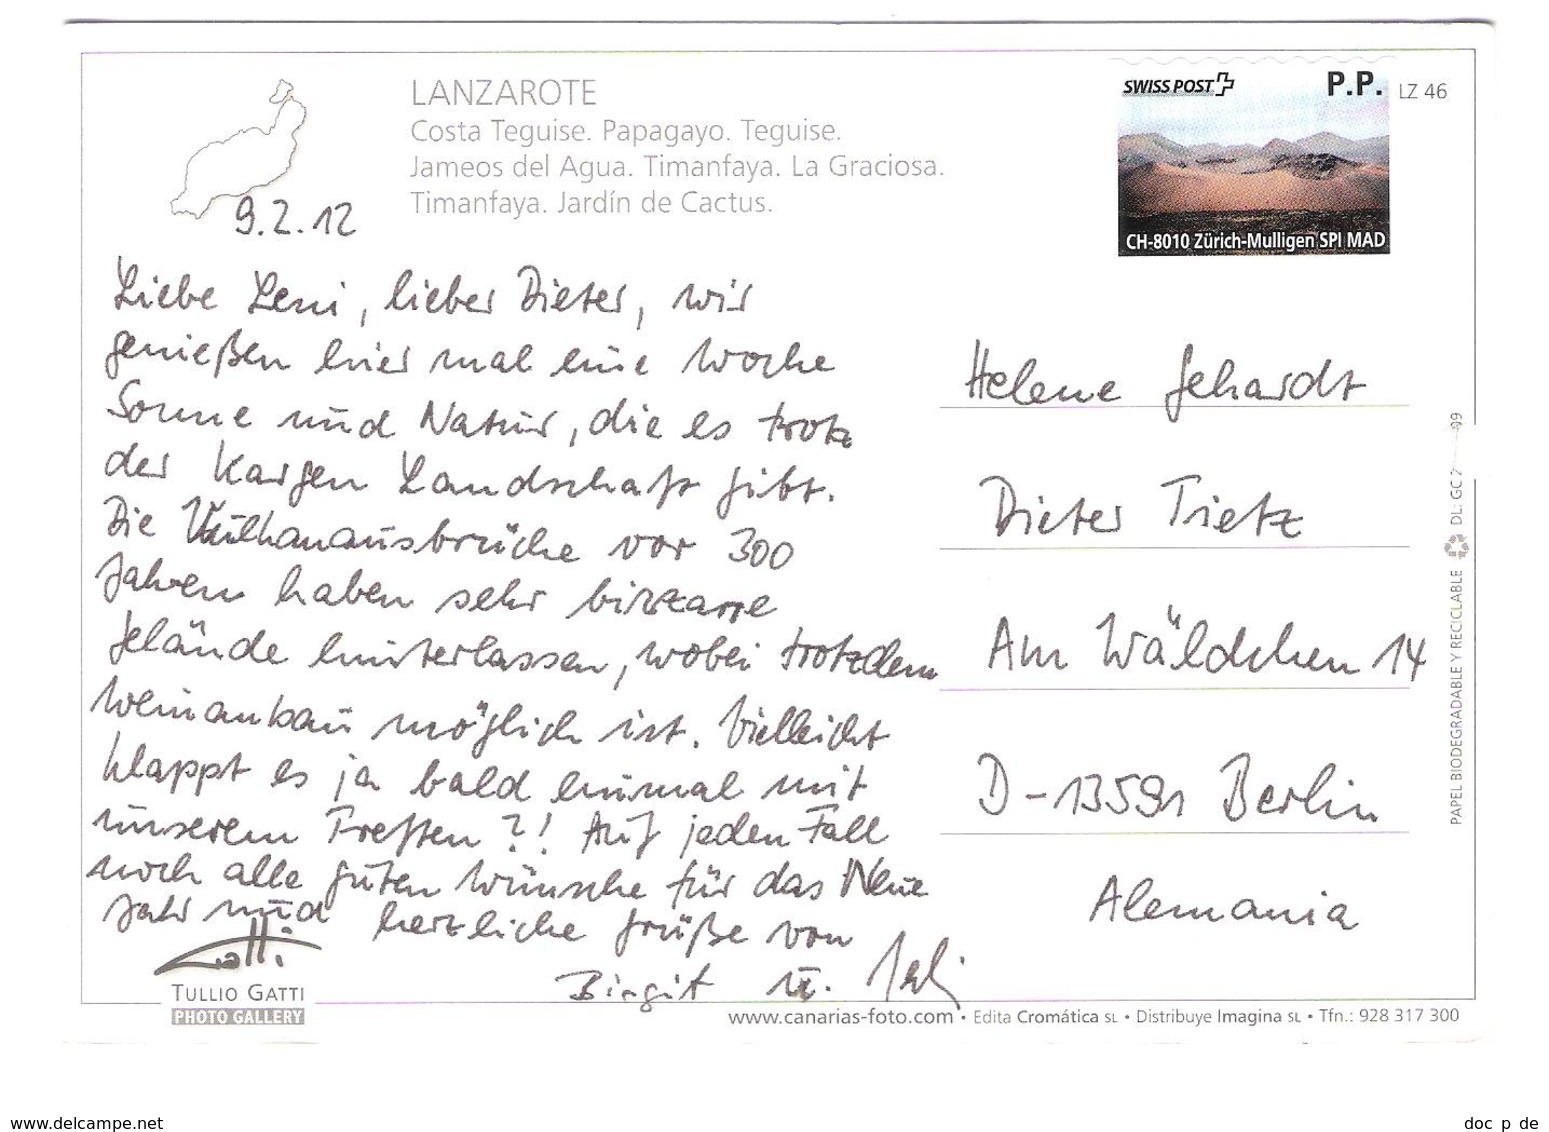 Spain - Lanzarote - PRIVAT PRE-PAYE TICKET - BIGLIETTO PRE-PAGATO - Private Post - Swiss Post P.P. Stamp - Lanzarote